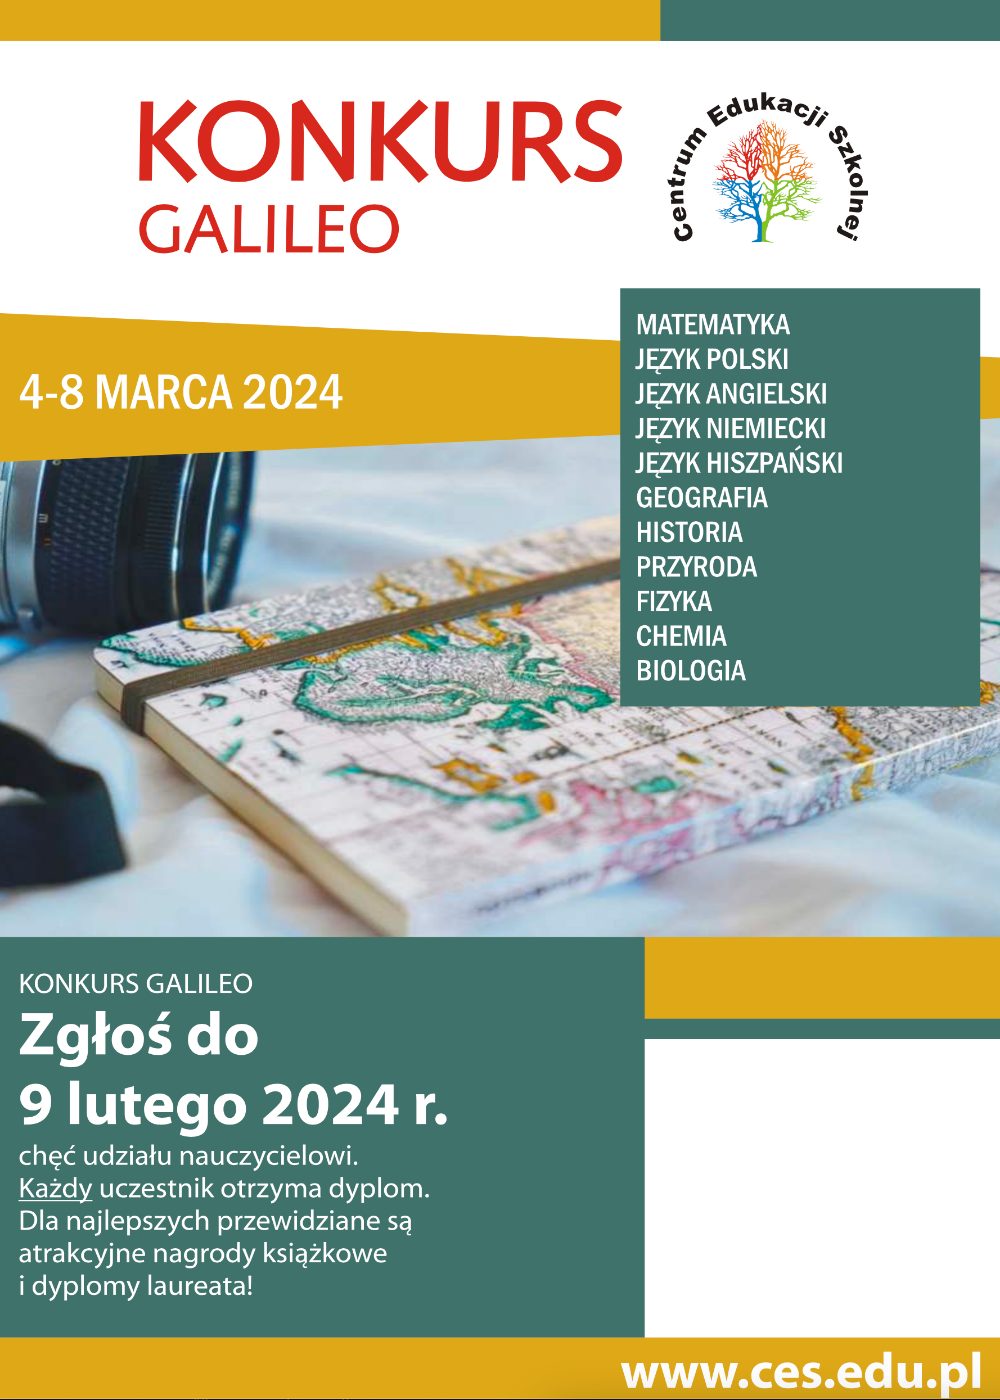 Zaproszenie do udziału w konkursie Galileo